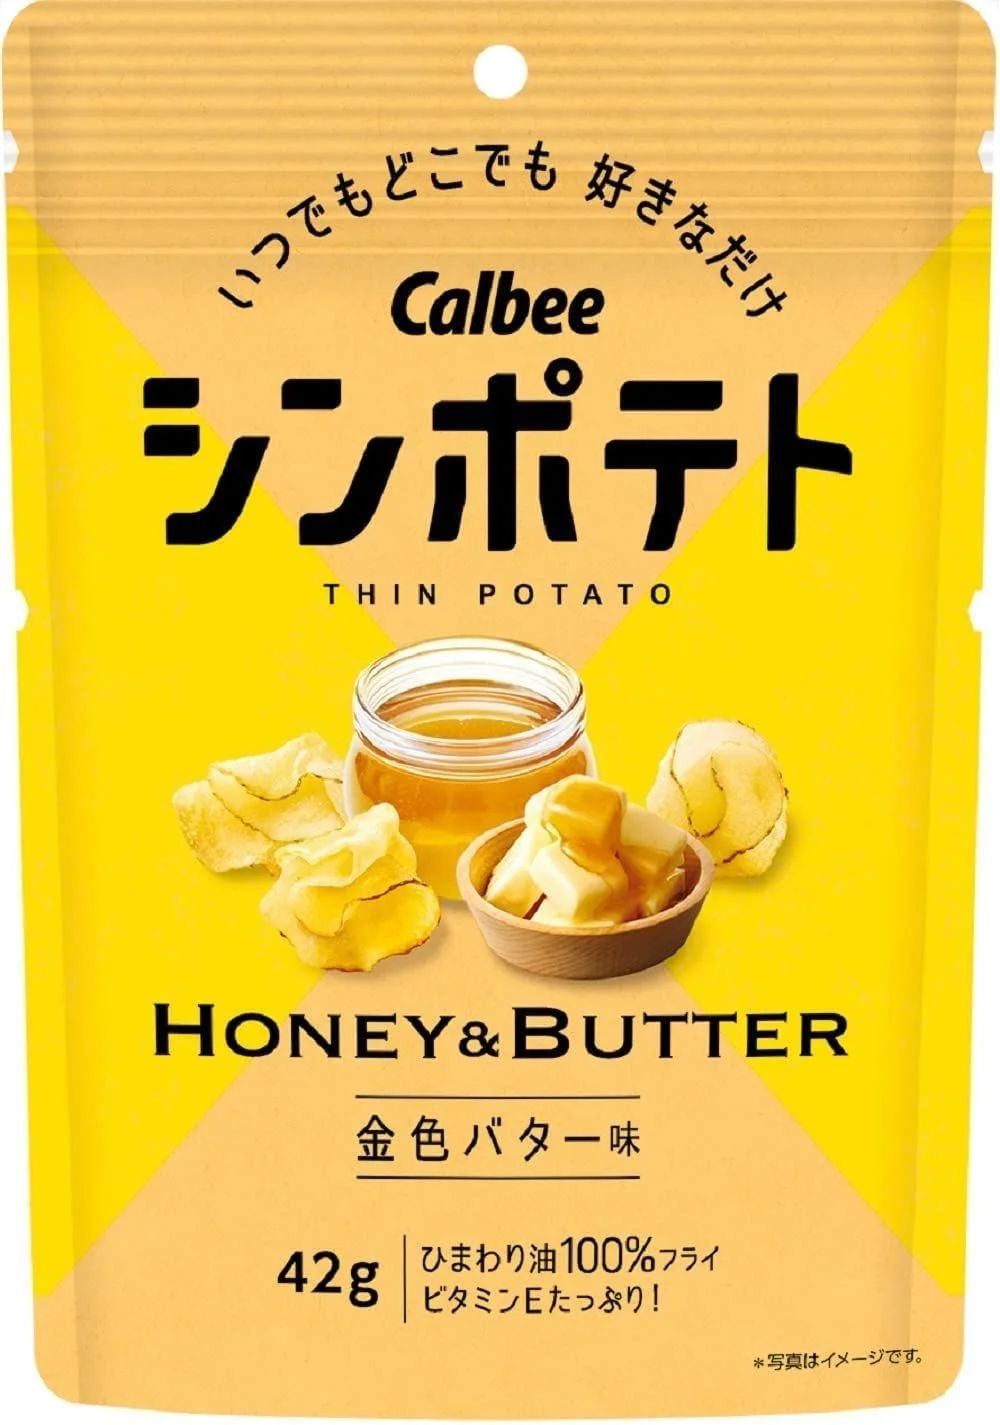 シンポテト 金色バター味 42g×12袋